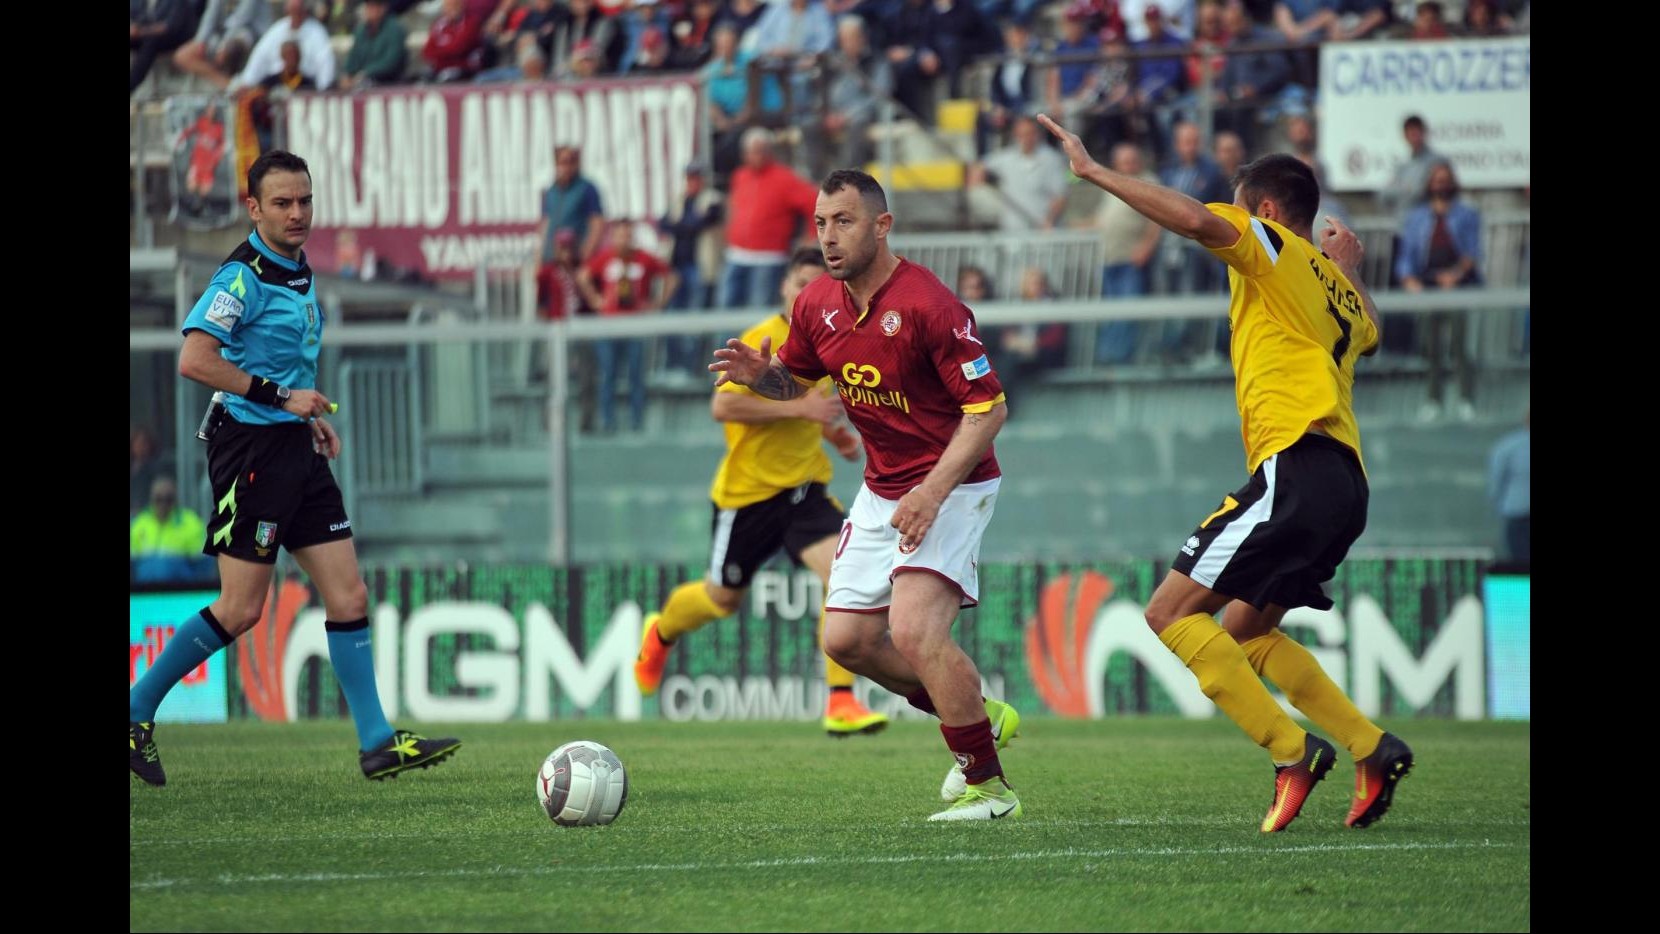 FOTO Lega Pro Playoff, Livorno-Renate 2-1